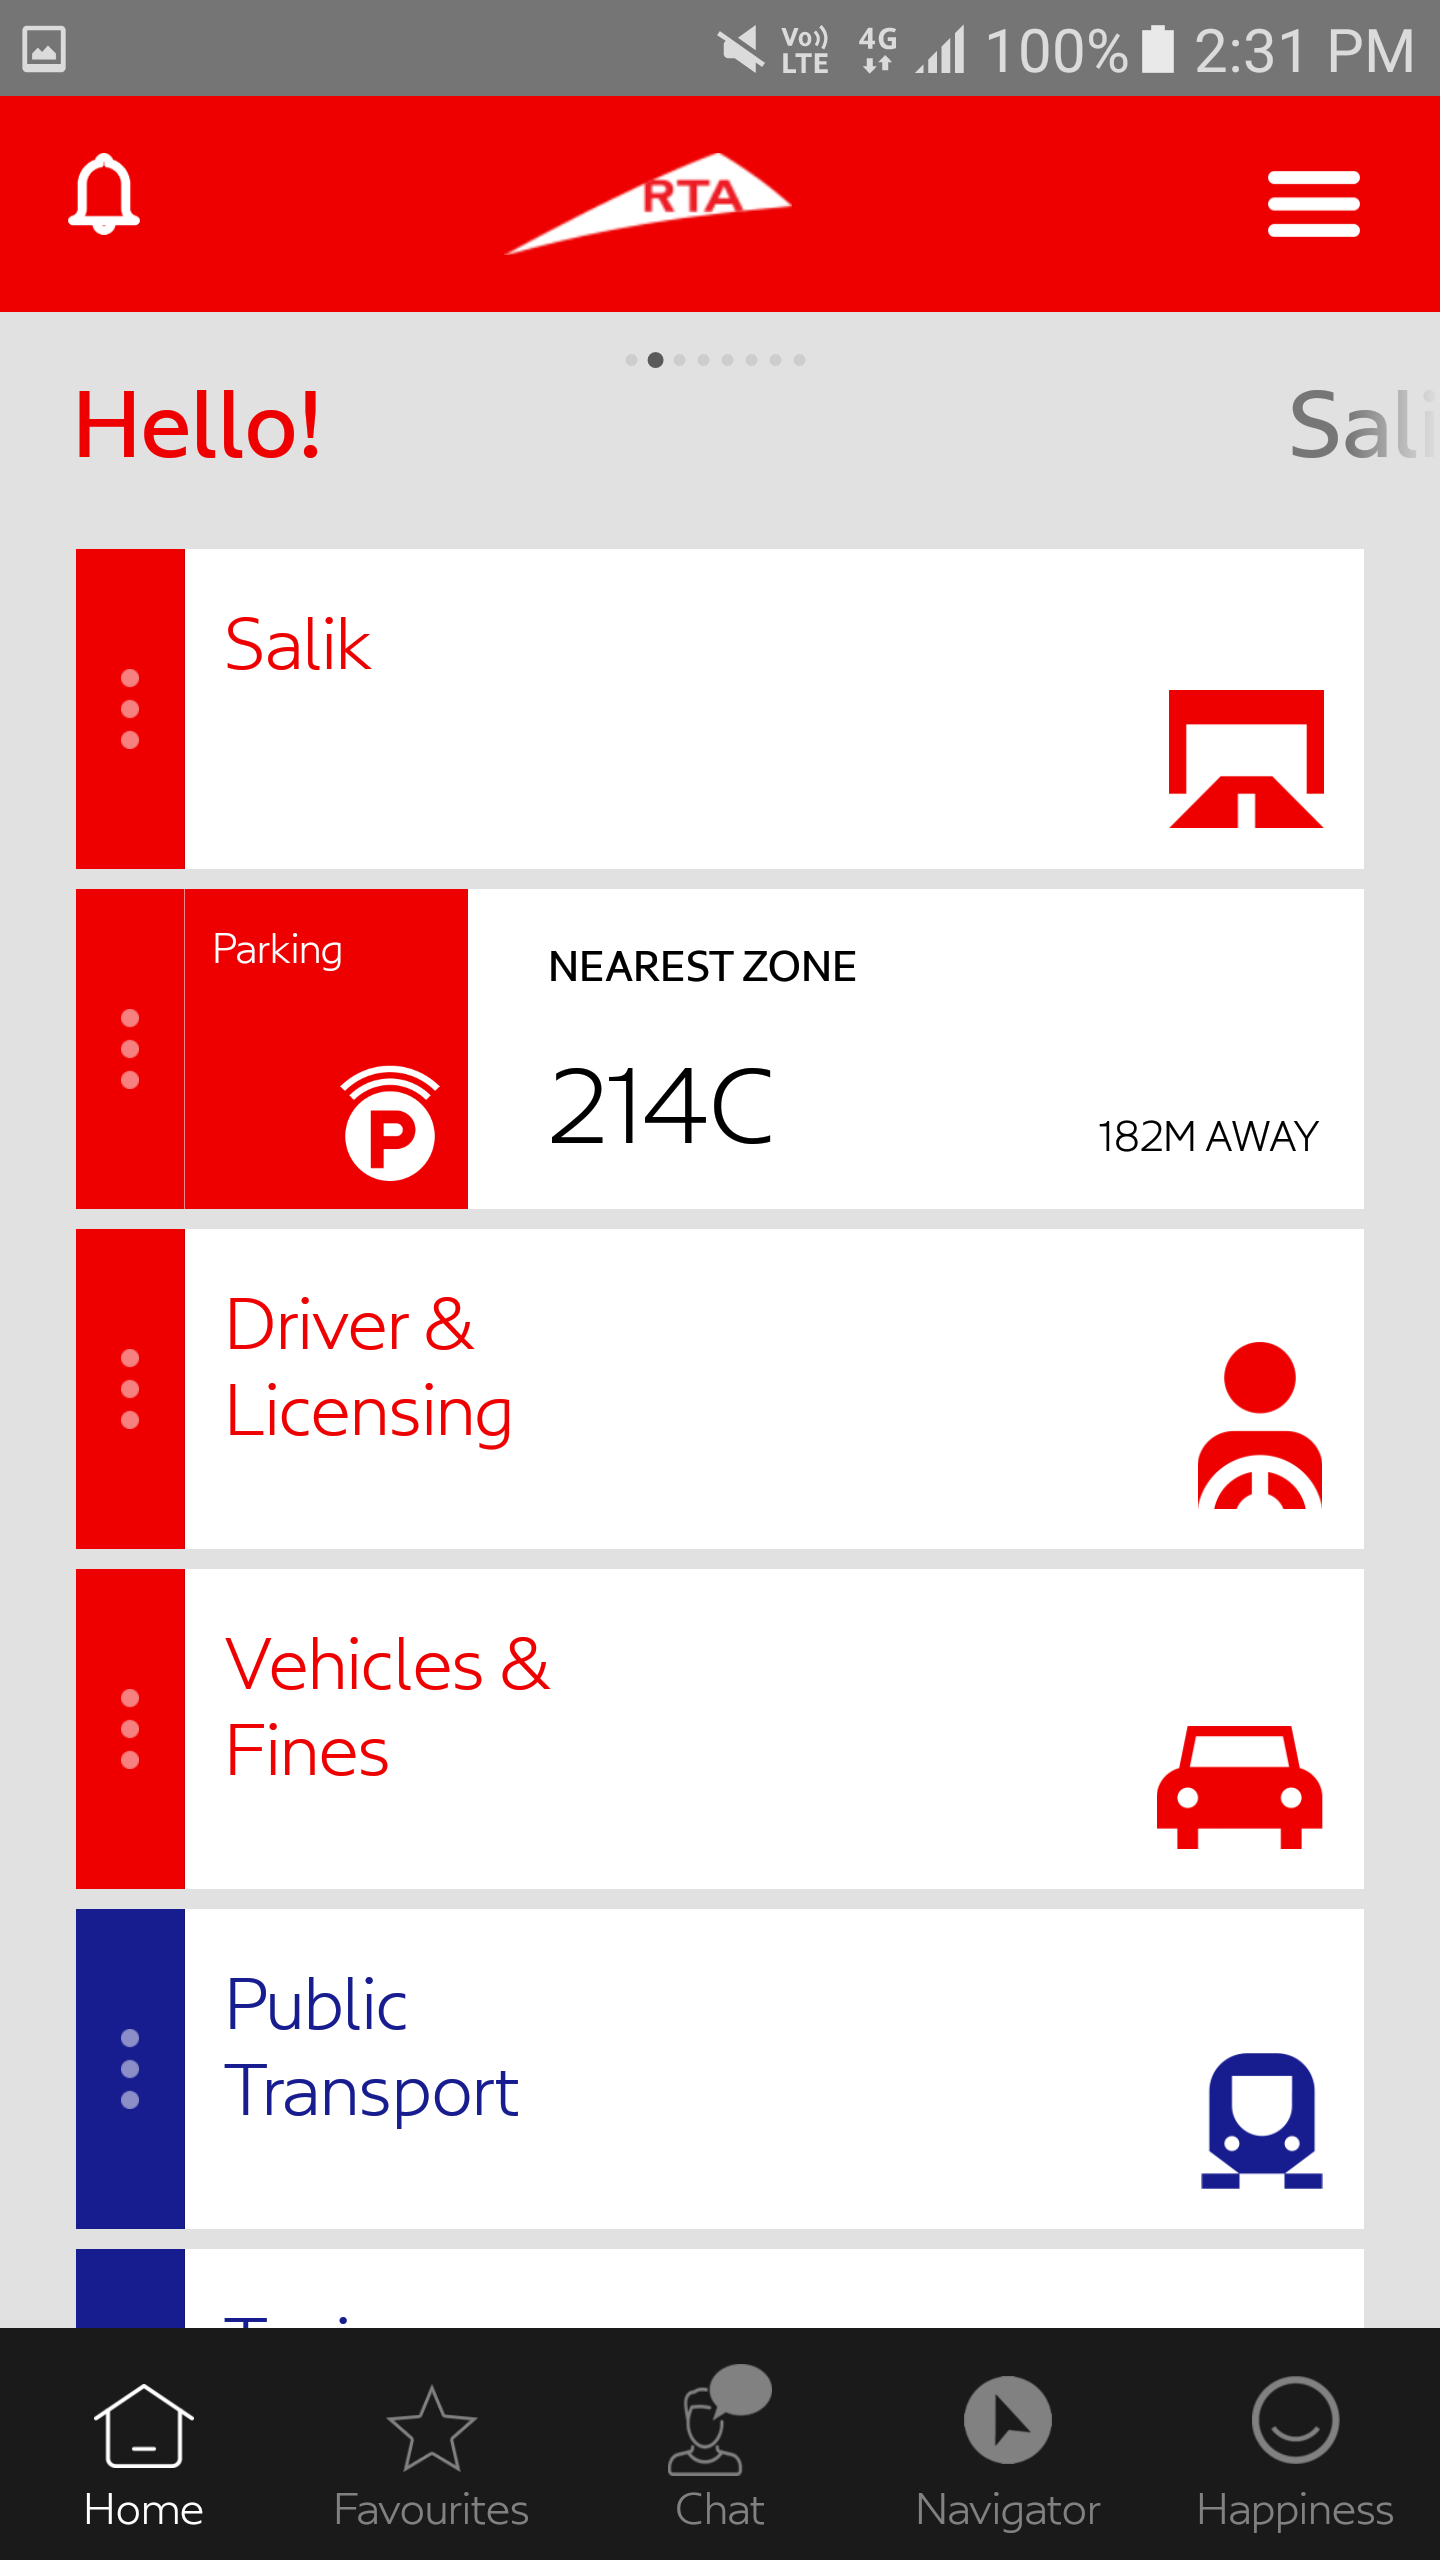 RTA Dubai app 